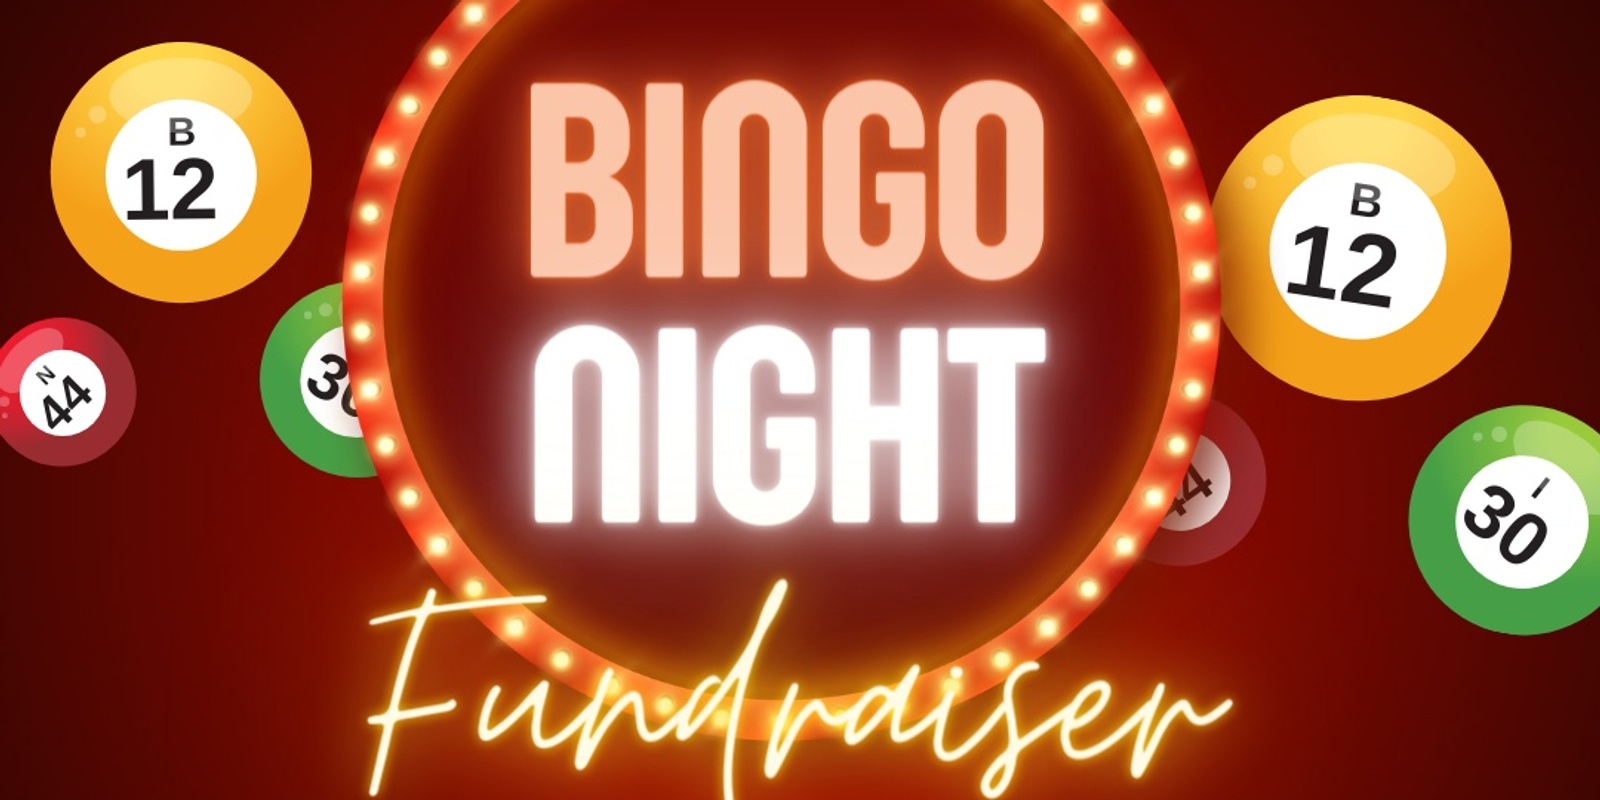 Banner image for Hataitai Community Bingo Night Fundraiser